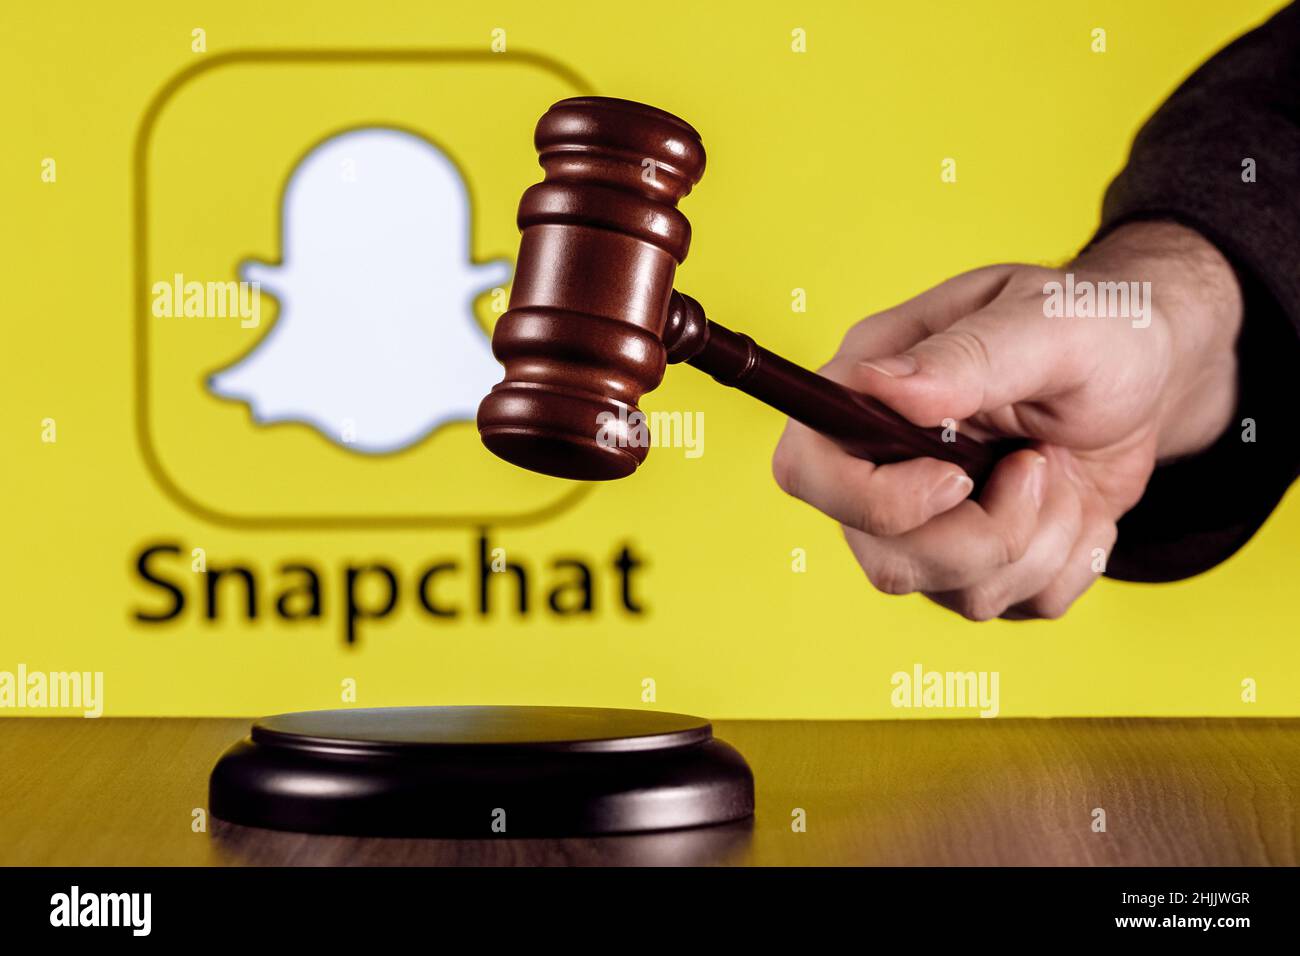 Gavel à portée de main sur l'arrière-plan du logo du service de messagerie instantanée Snapchat. Le concept du procès. Banque D'Images